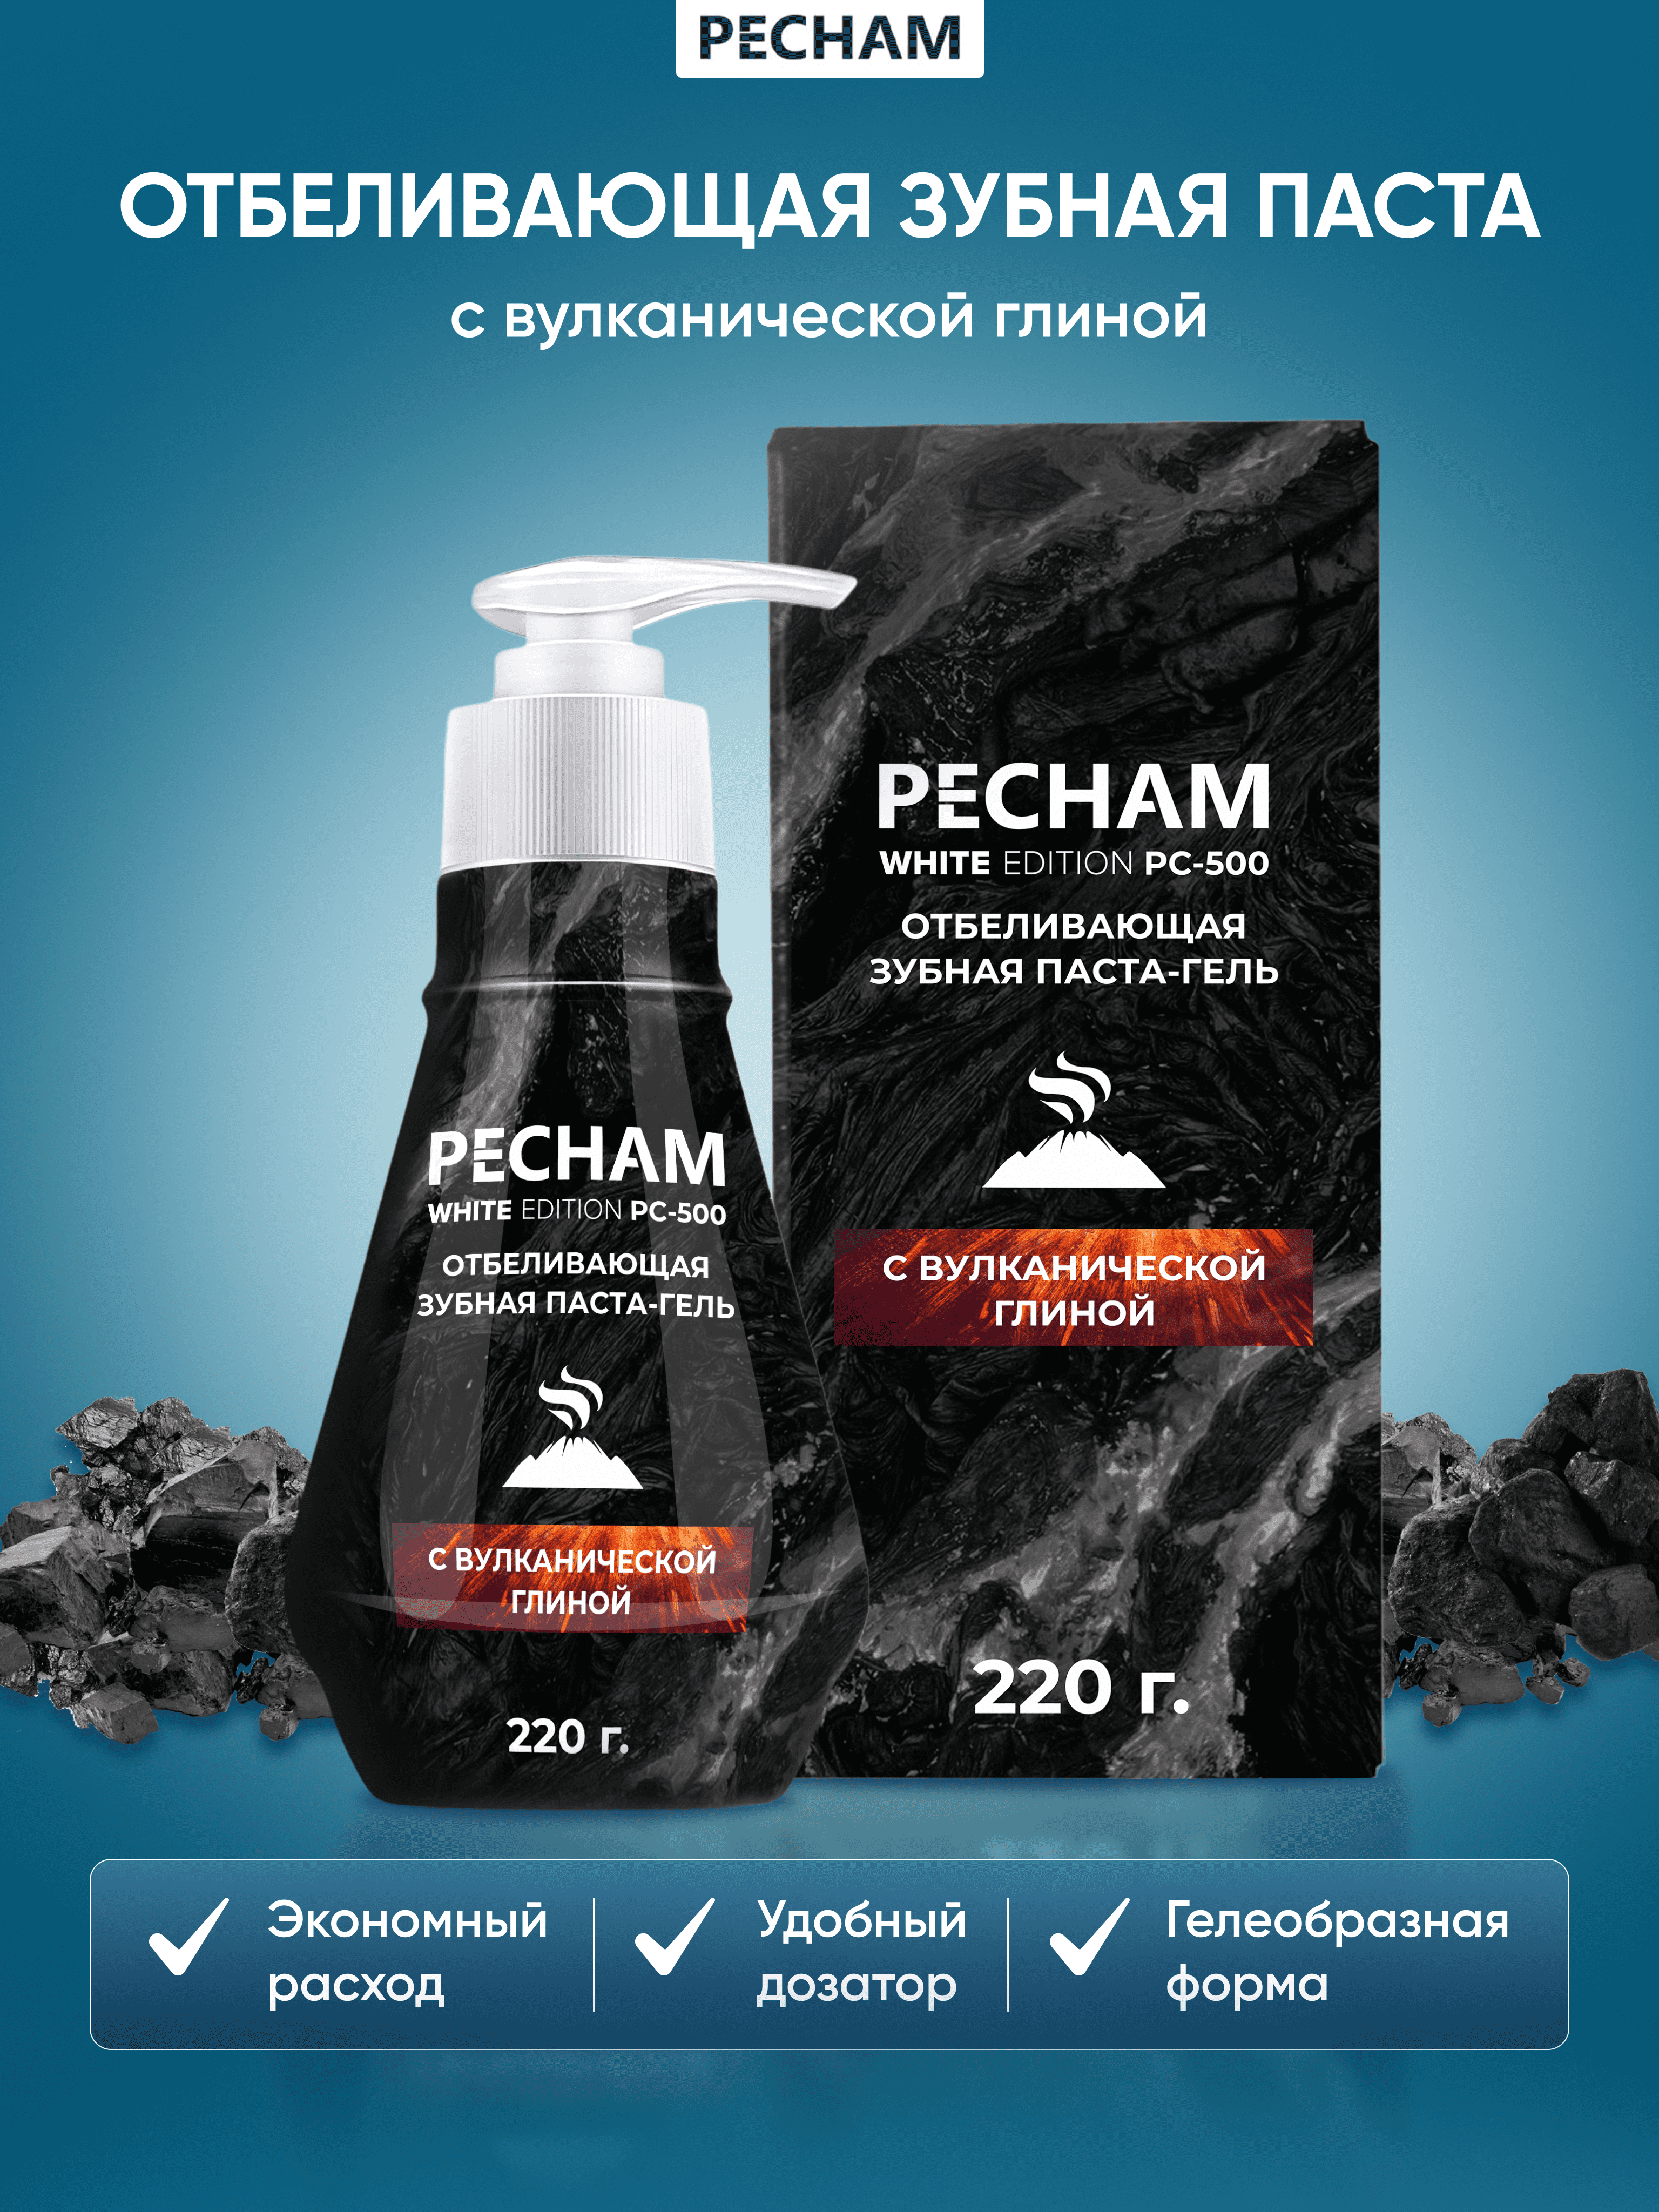 Отбеливающая зубная паста-гель Pecham White Edition с вулканической глиной 220 г крестовые походы